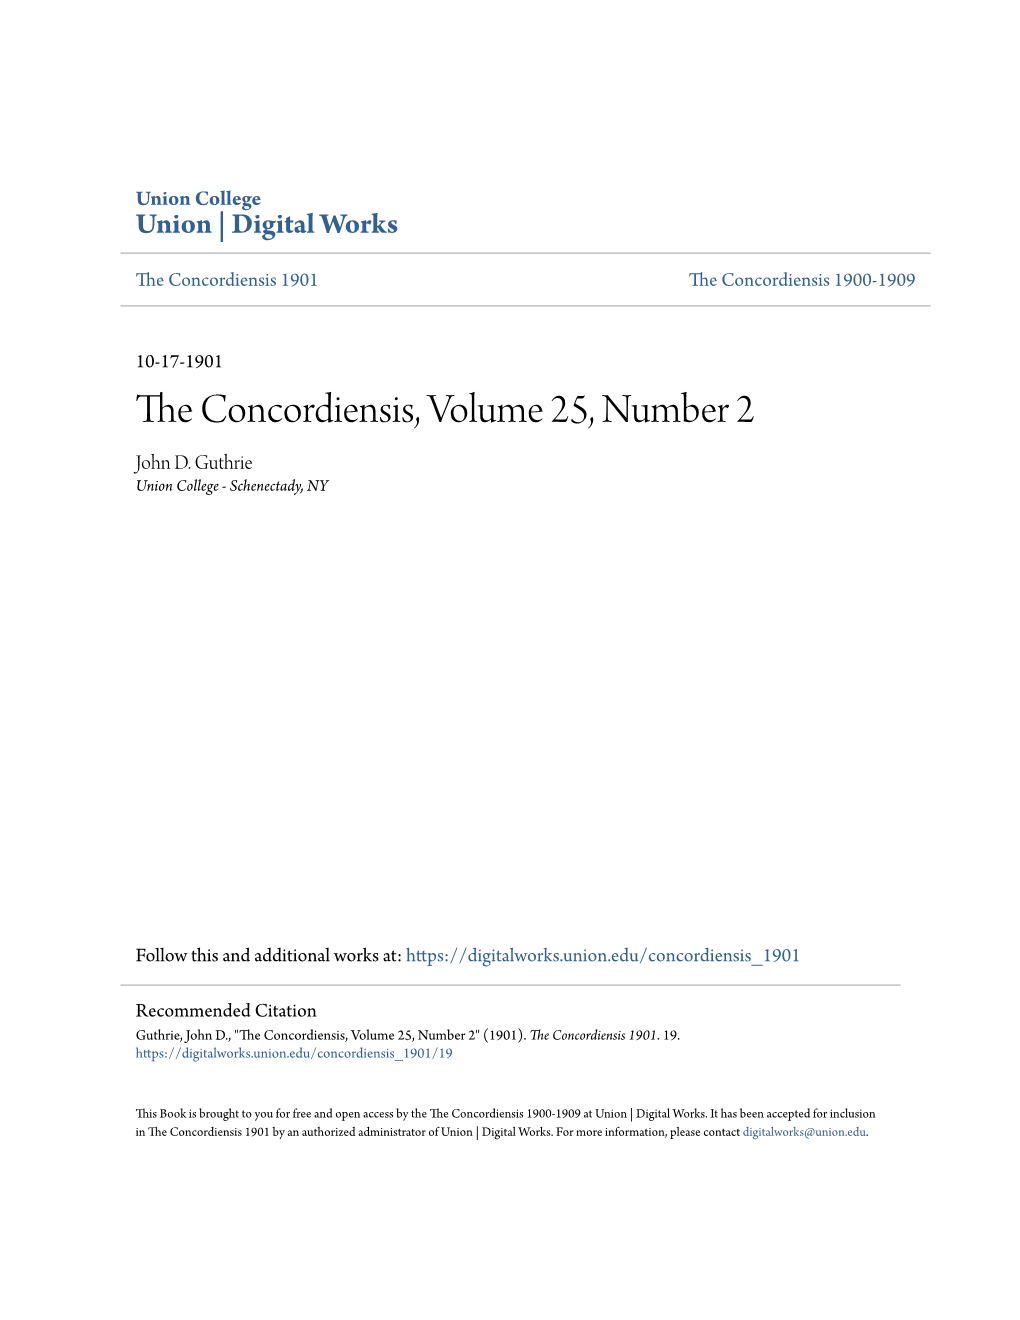 The Concordiensis, Volume 25, Number 2